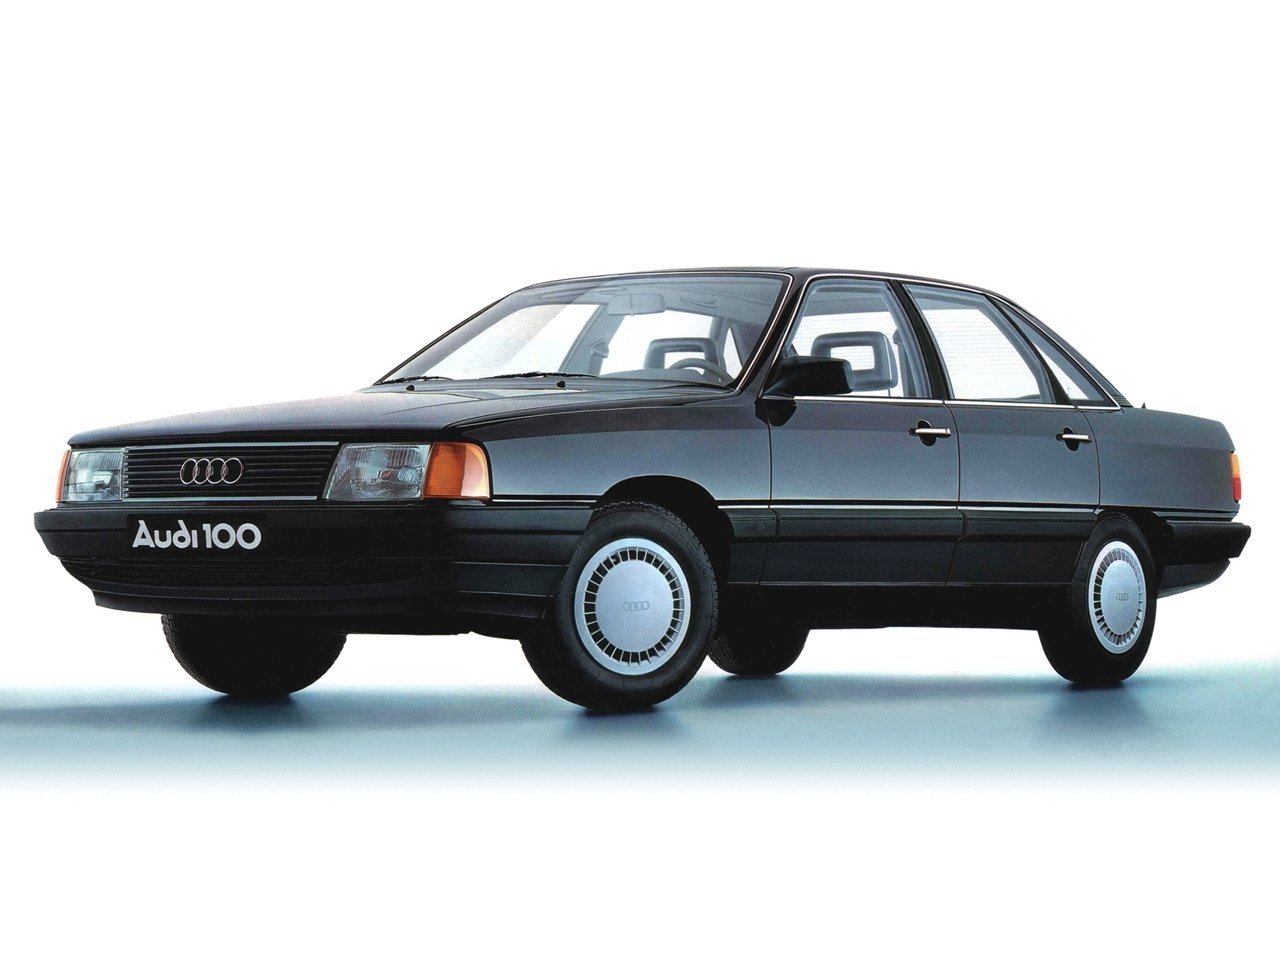 Расход газа восьми комплектаций седана Audi 100. Разница стоимости заправки газом и бензином. Автономный пробег до и после установки ГБО.